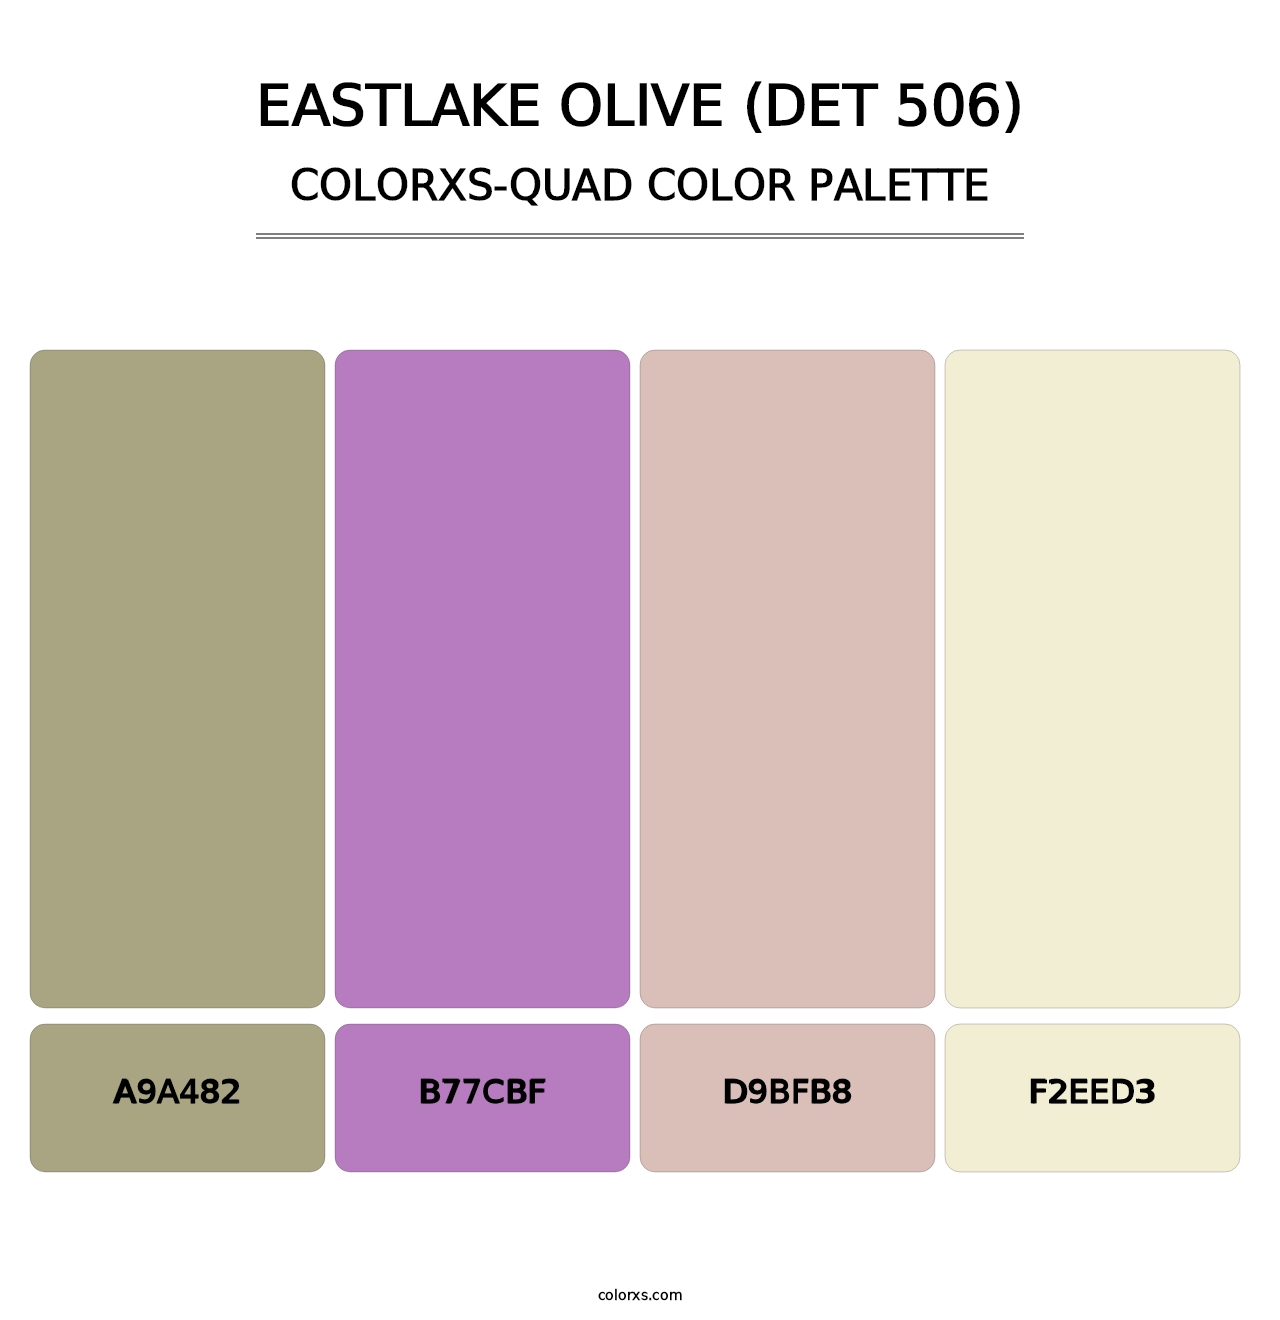 Eastlake Olive (DET 506) - Colorxs Quad Palette